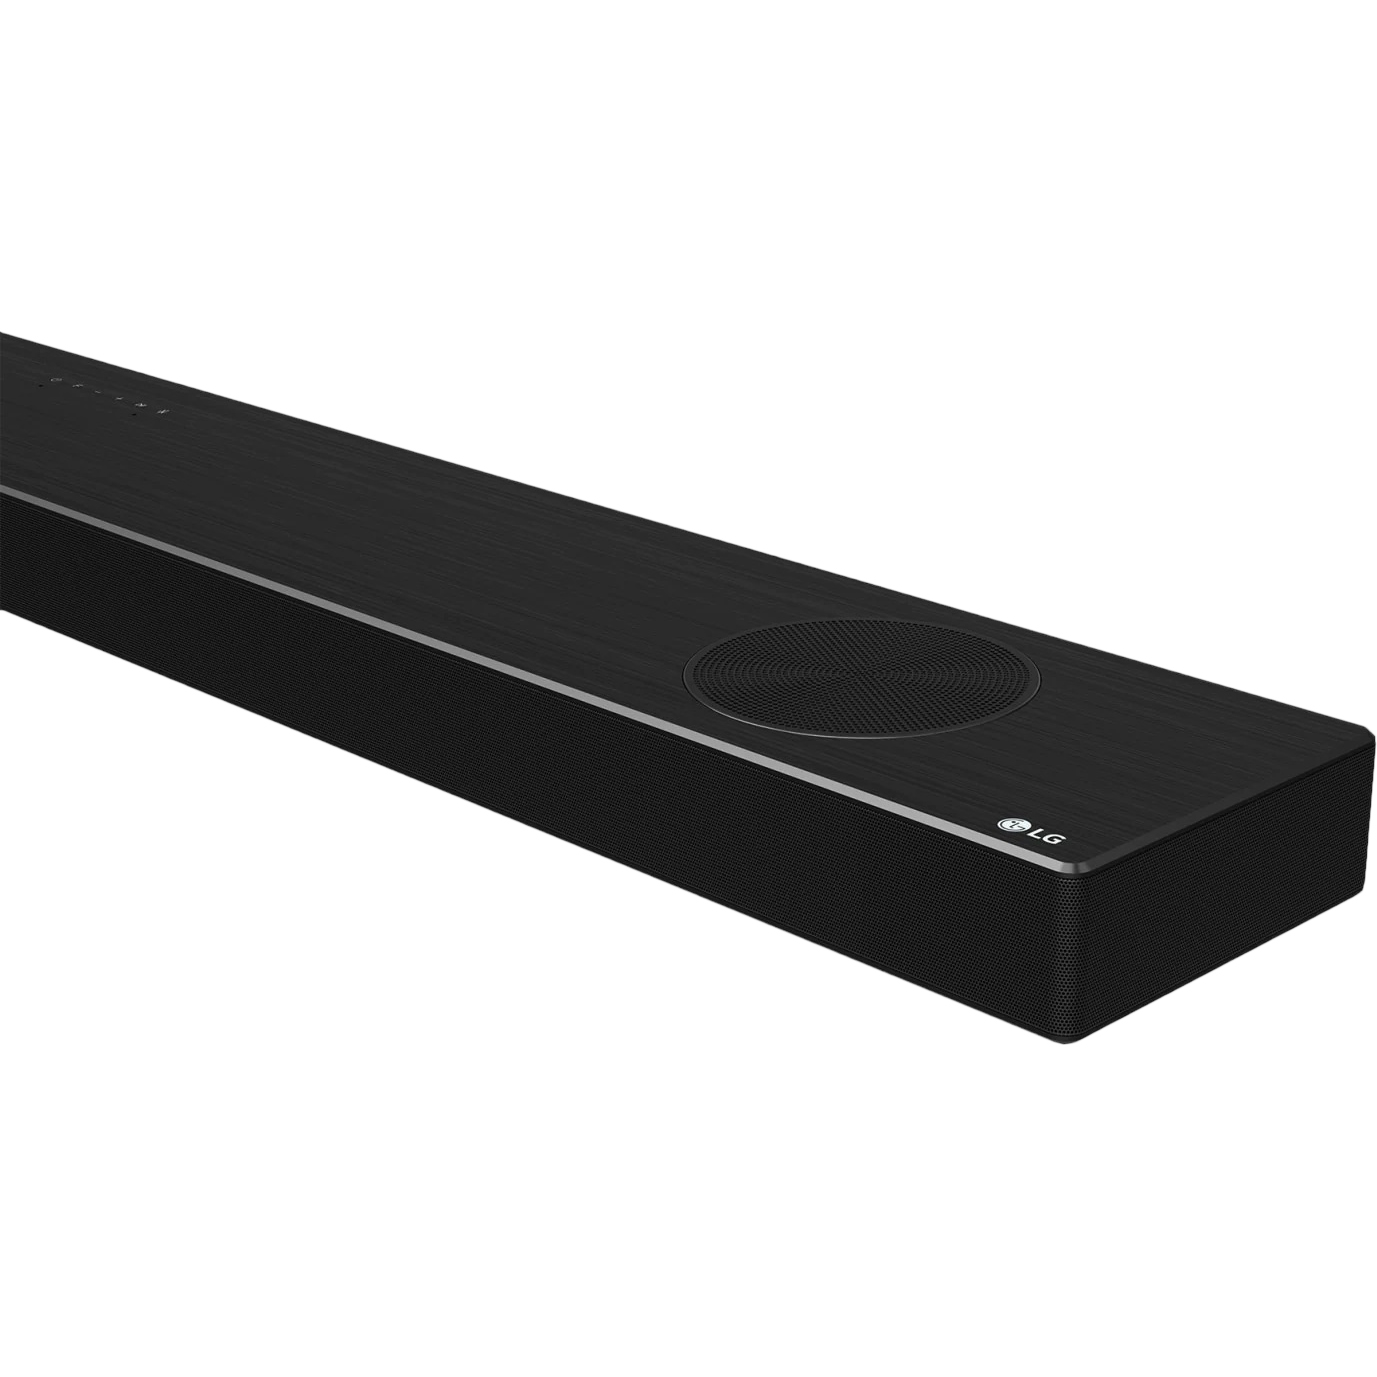 Саундбар LG SP9A, цвет черный, размер 39x22,1x31,28 см - фото 7